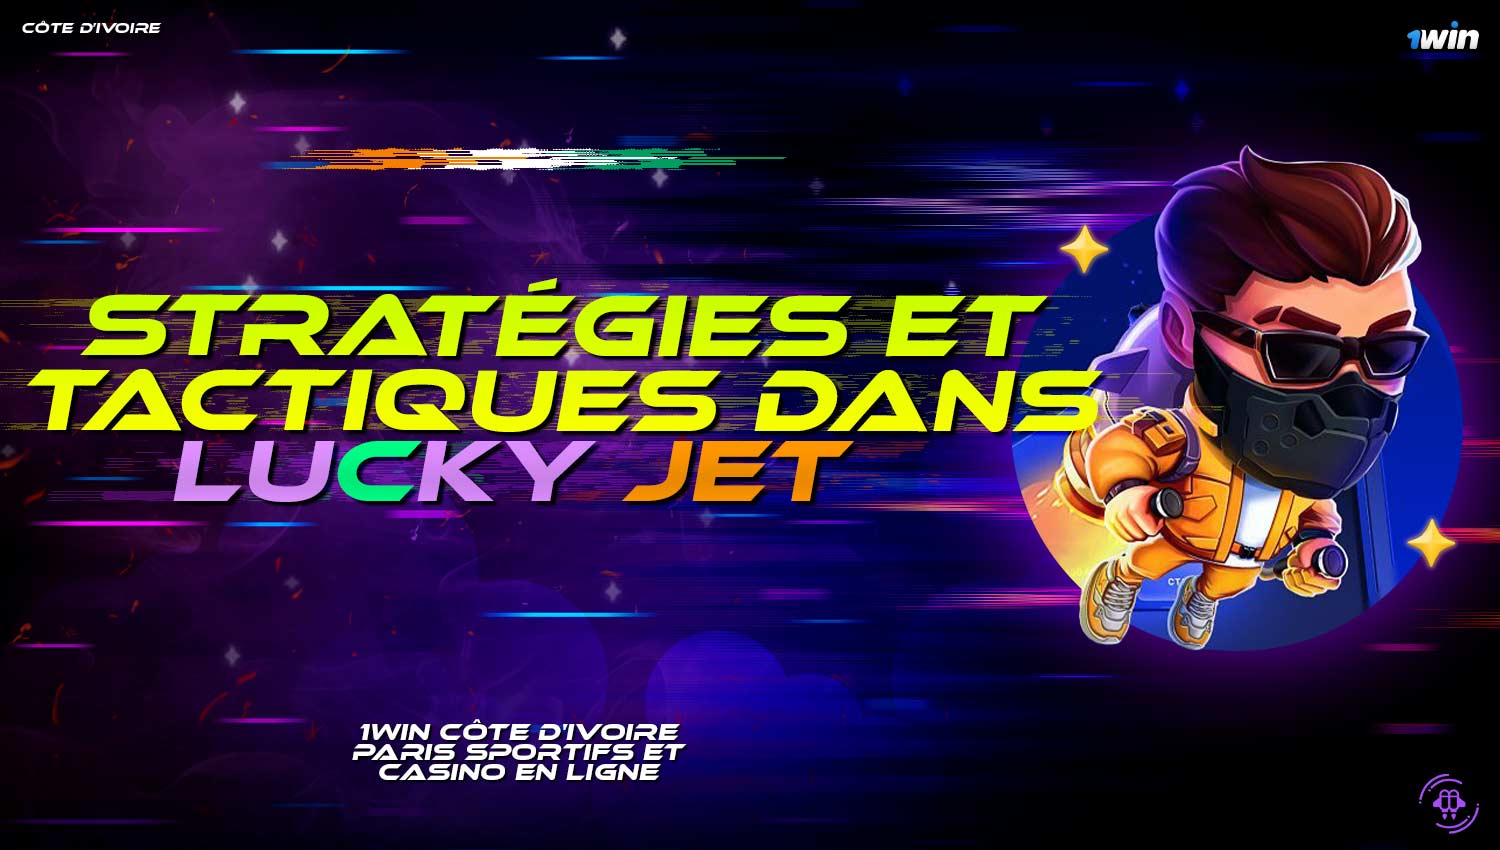 Description détaillée de la stratégie et de la tactique dans le jeu "Lucky Jet".